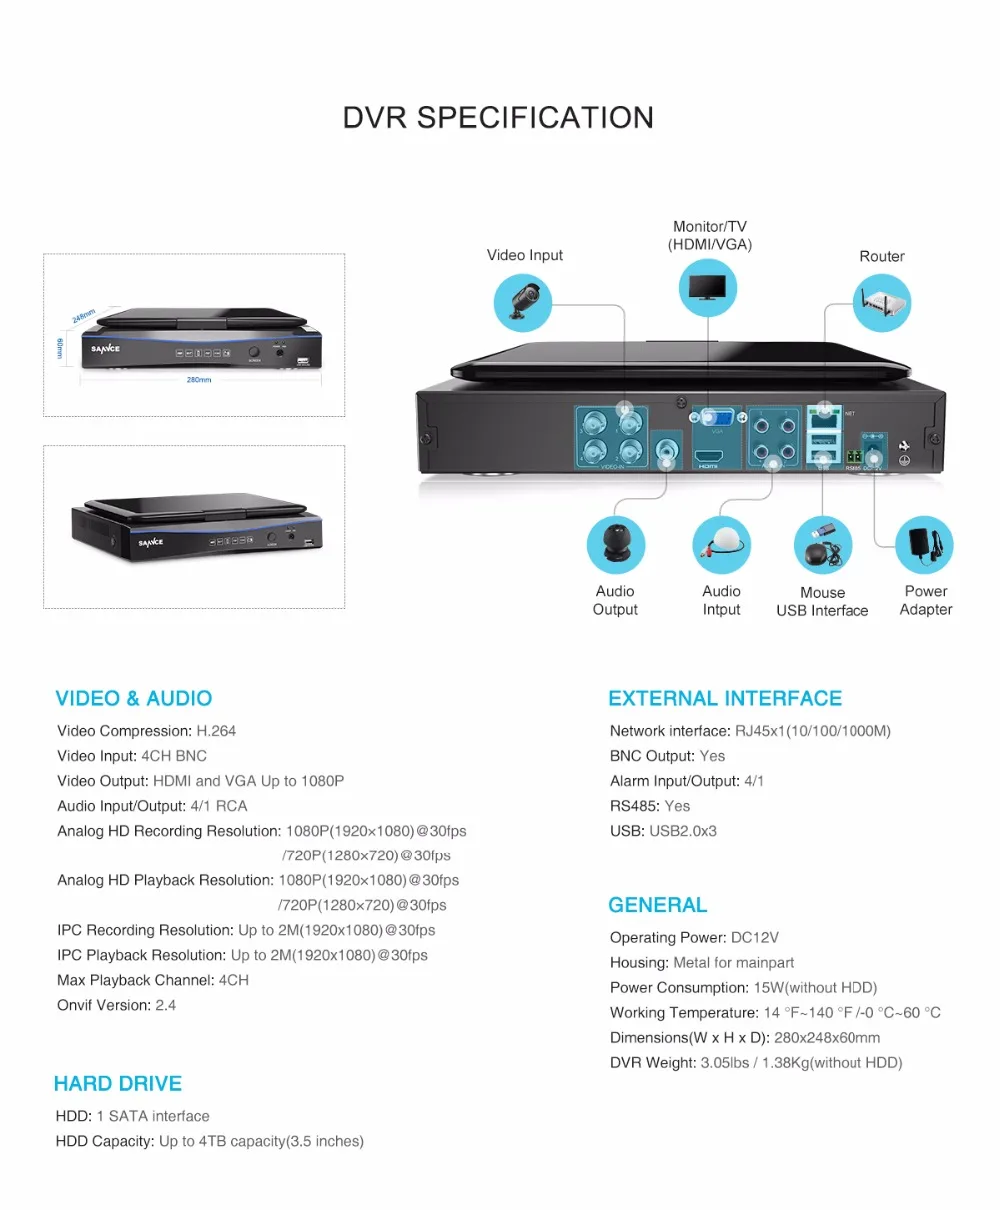 SANNCE 4CH FHD 1080P безопасности камера системы видеонаблюдения DVR с 10,1 ''ЖК дисплей шт. и 4 шт. 2.0MP Всепогодный наблюдения